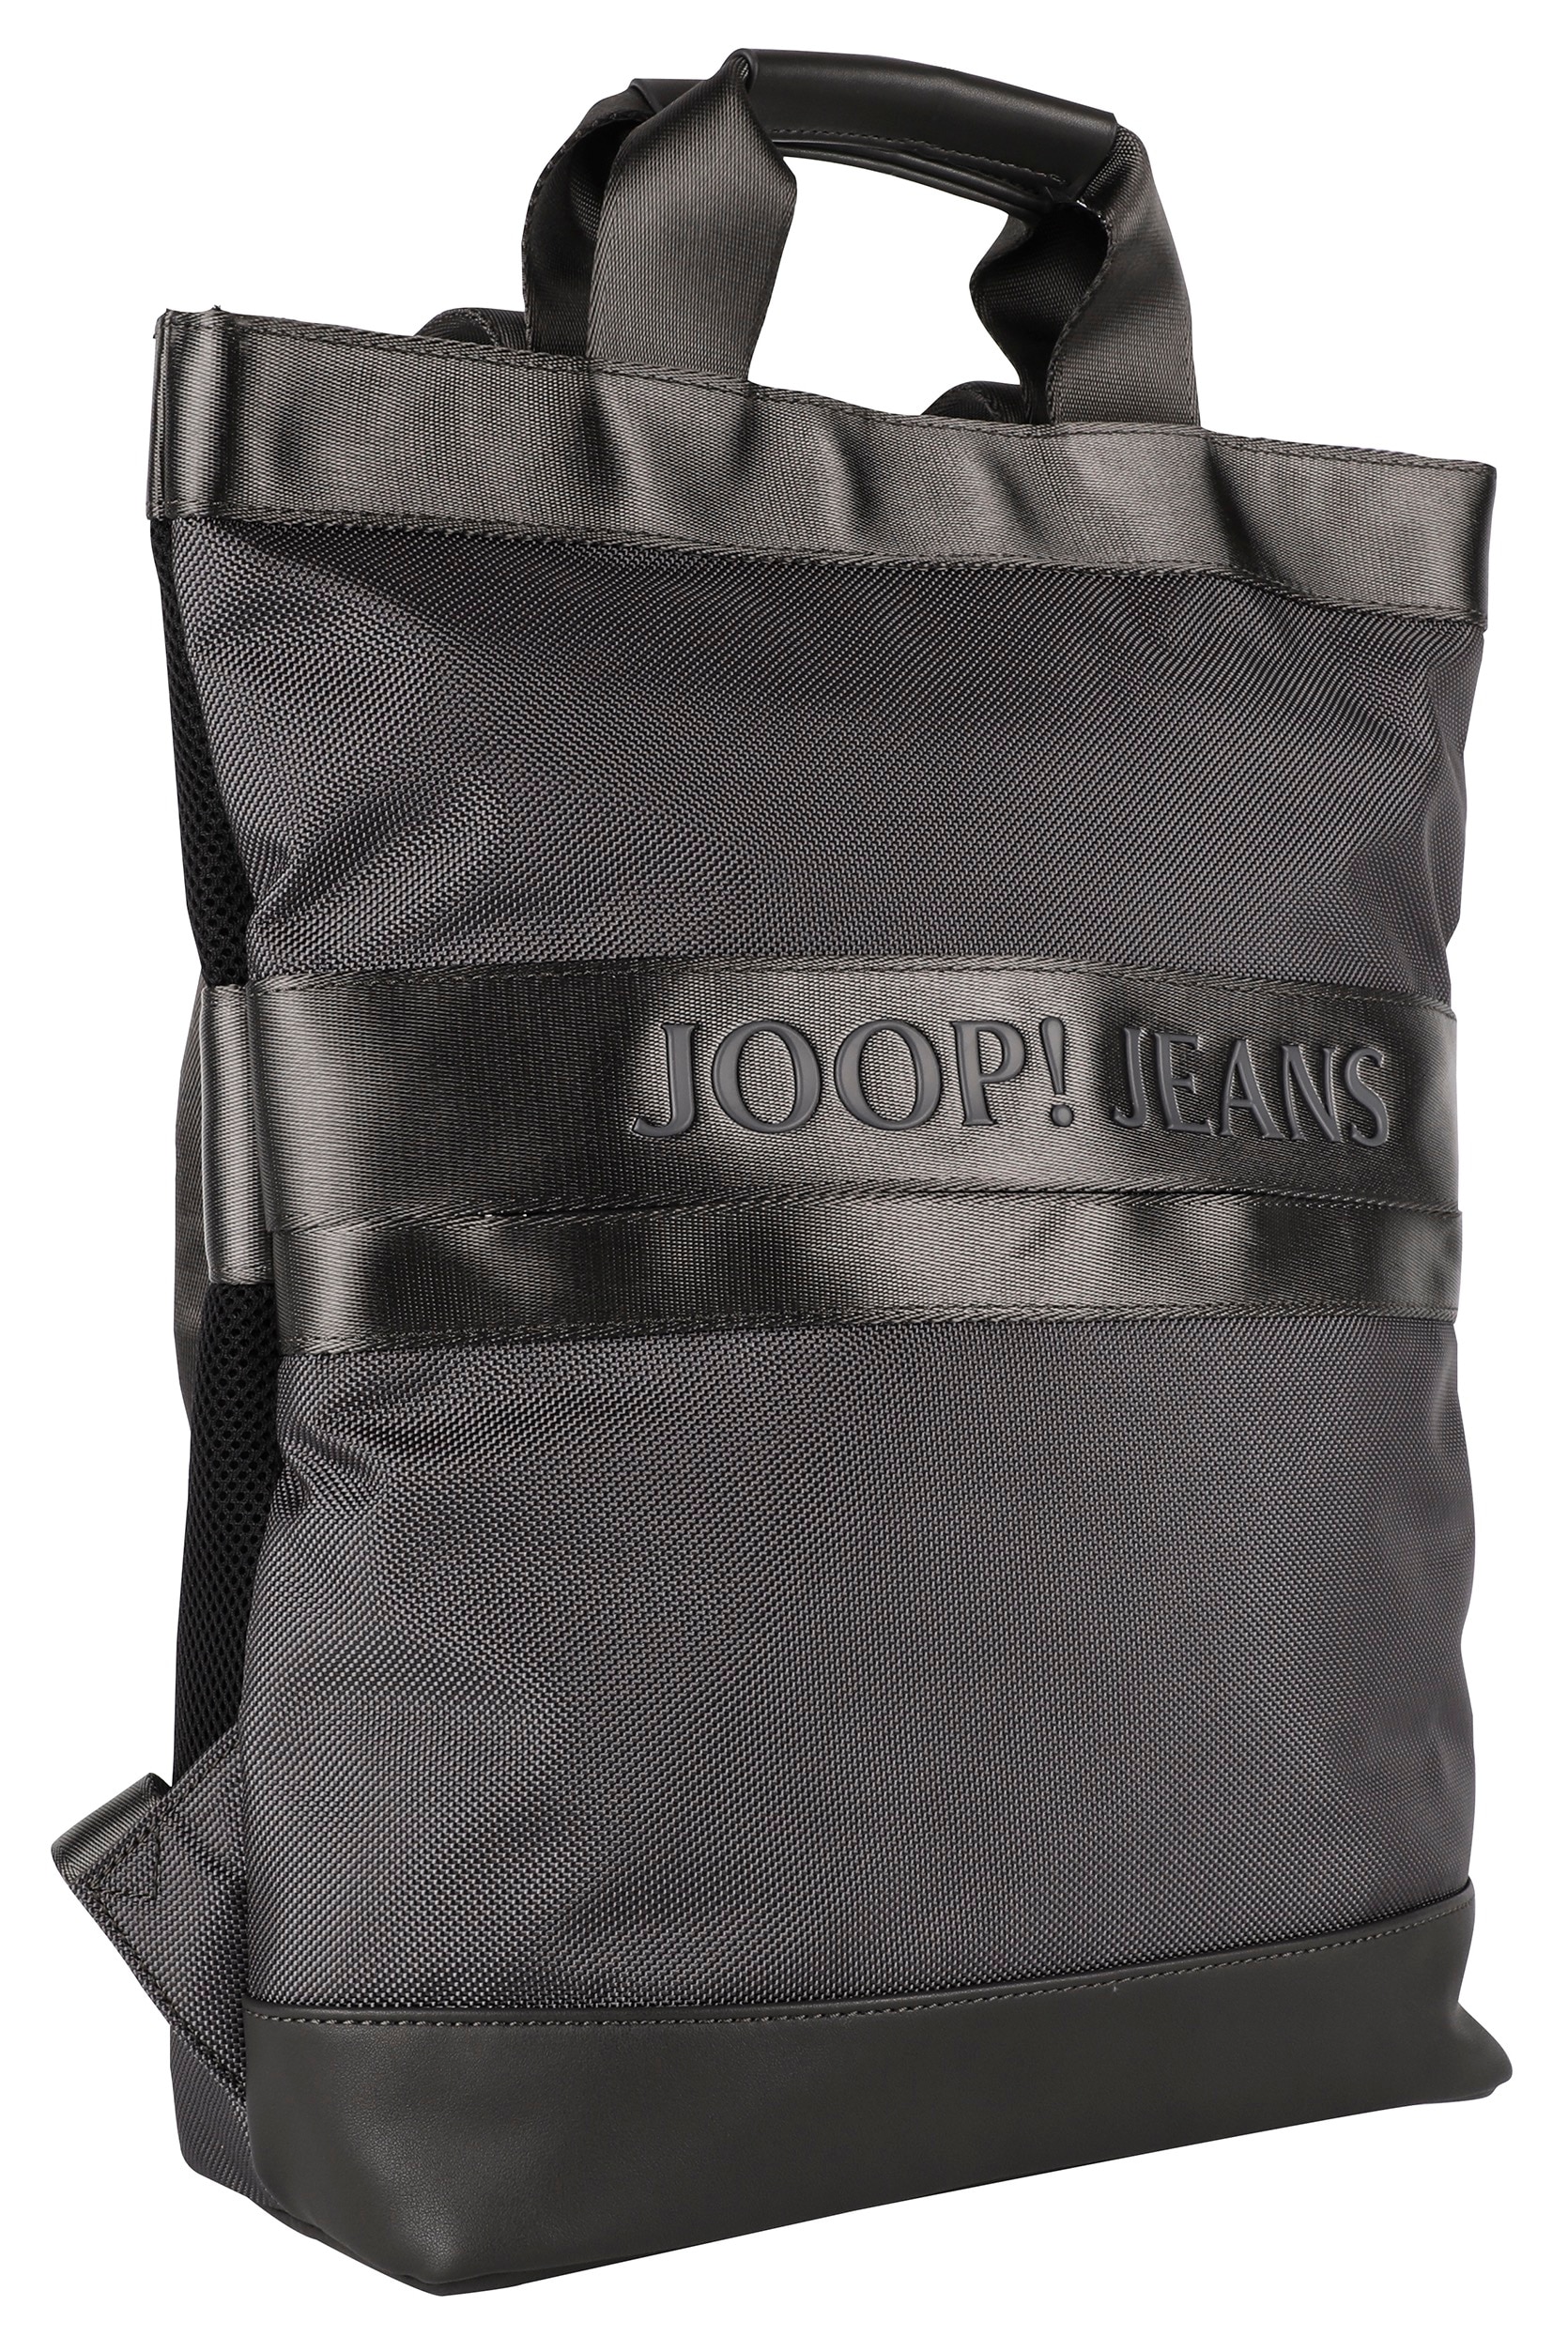 Joop Jeans Vortasche Reißverschluss- svz«, »modica Cityrucksack falk backpack bei mit